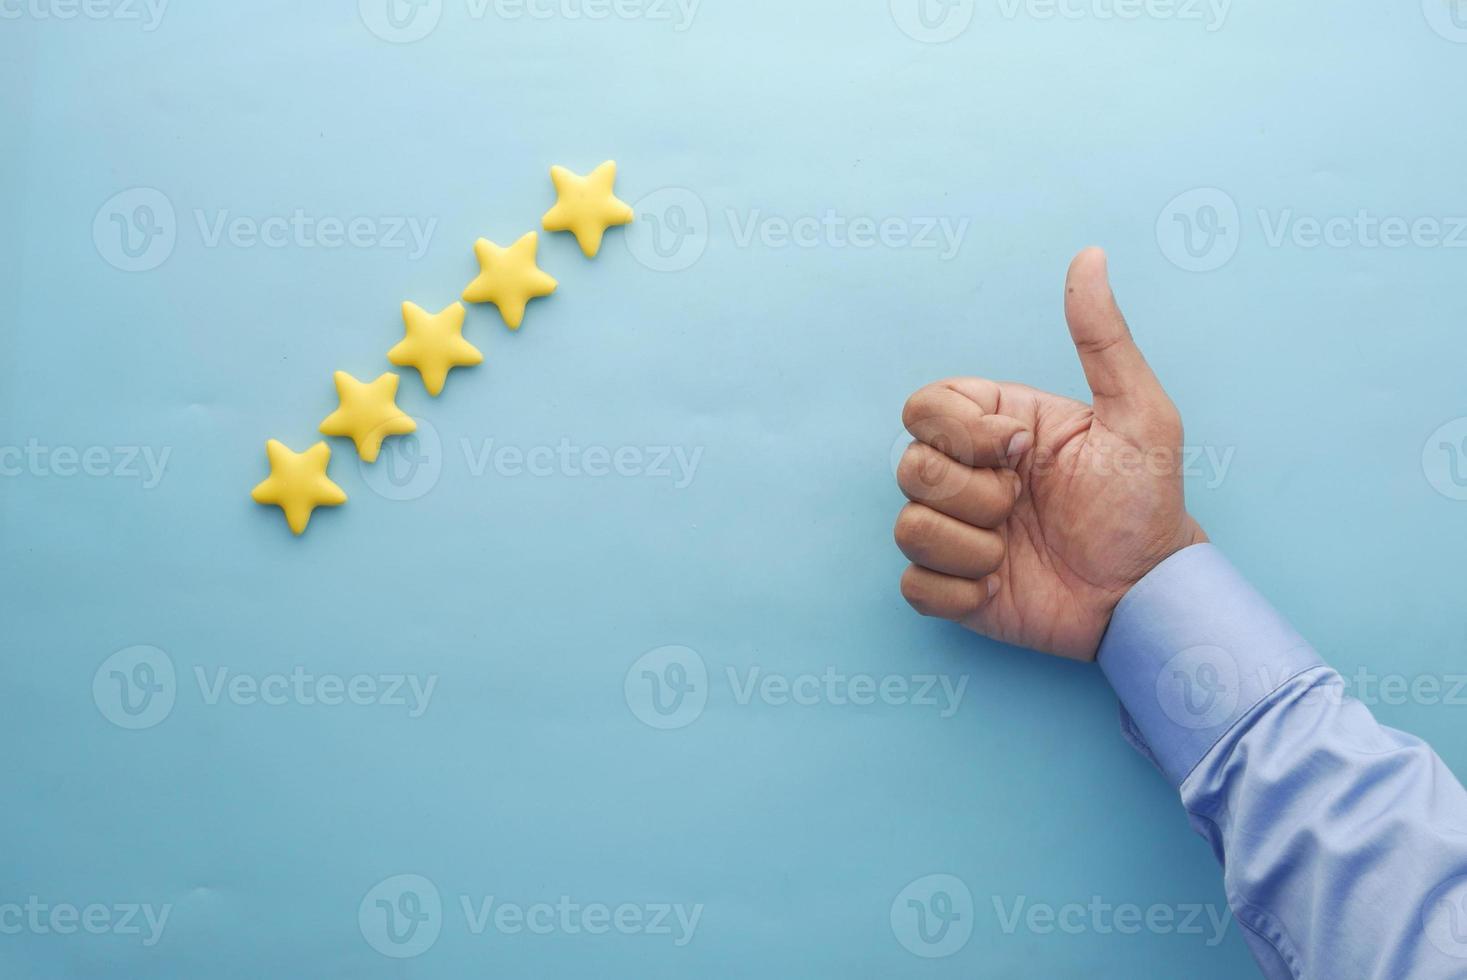 Kundenbewertungskonzept. Bewertung goldene Sterne auf blauem Hintergrund foto